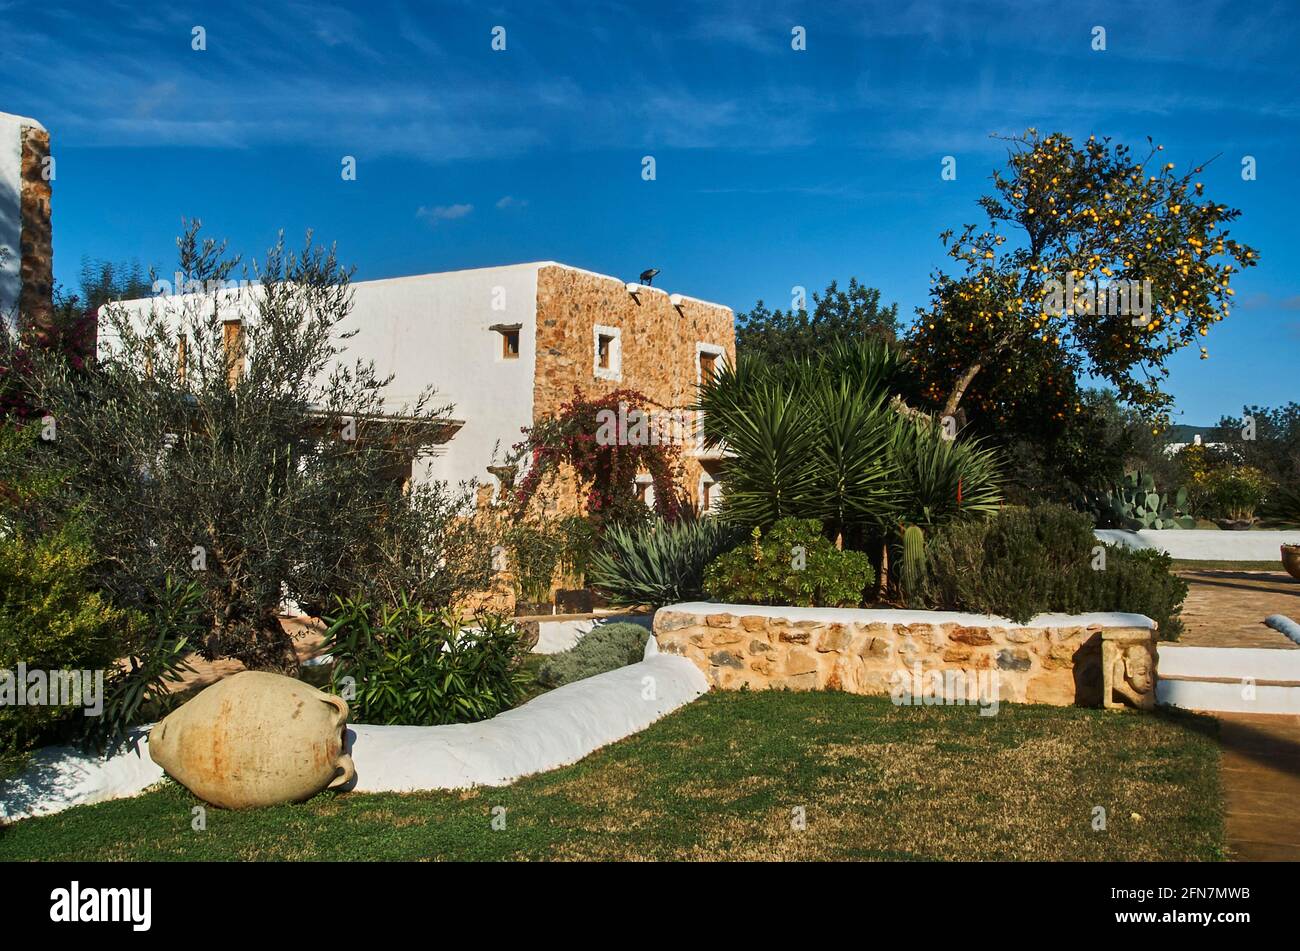 Country Hotel con ristorante e spa. Agroturismo Atzaro. Ctra Sant Joan, km 15. Santa Eularia des Riu. Ibiza. Isole Baleari. Spagna. Foto Stock